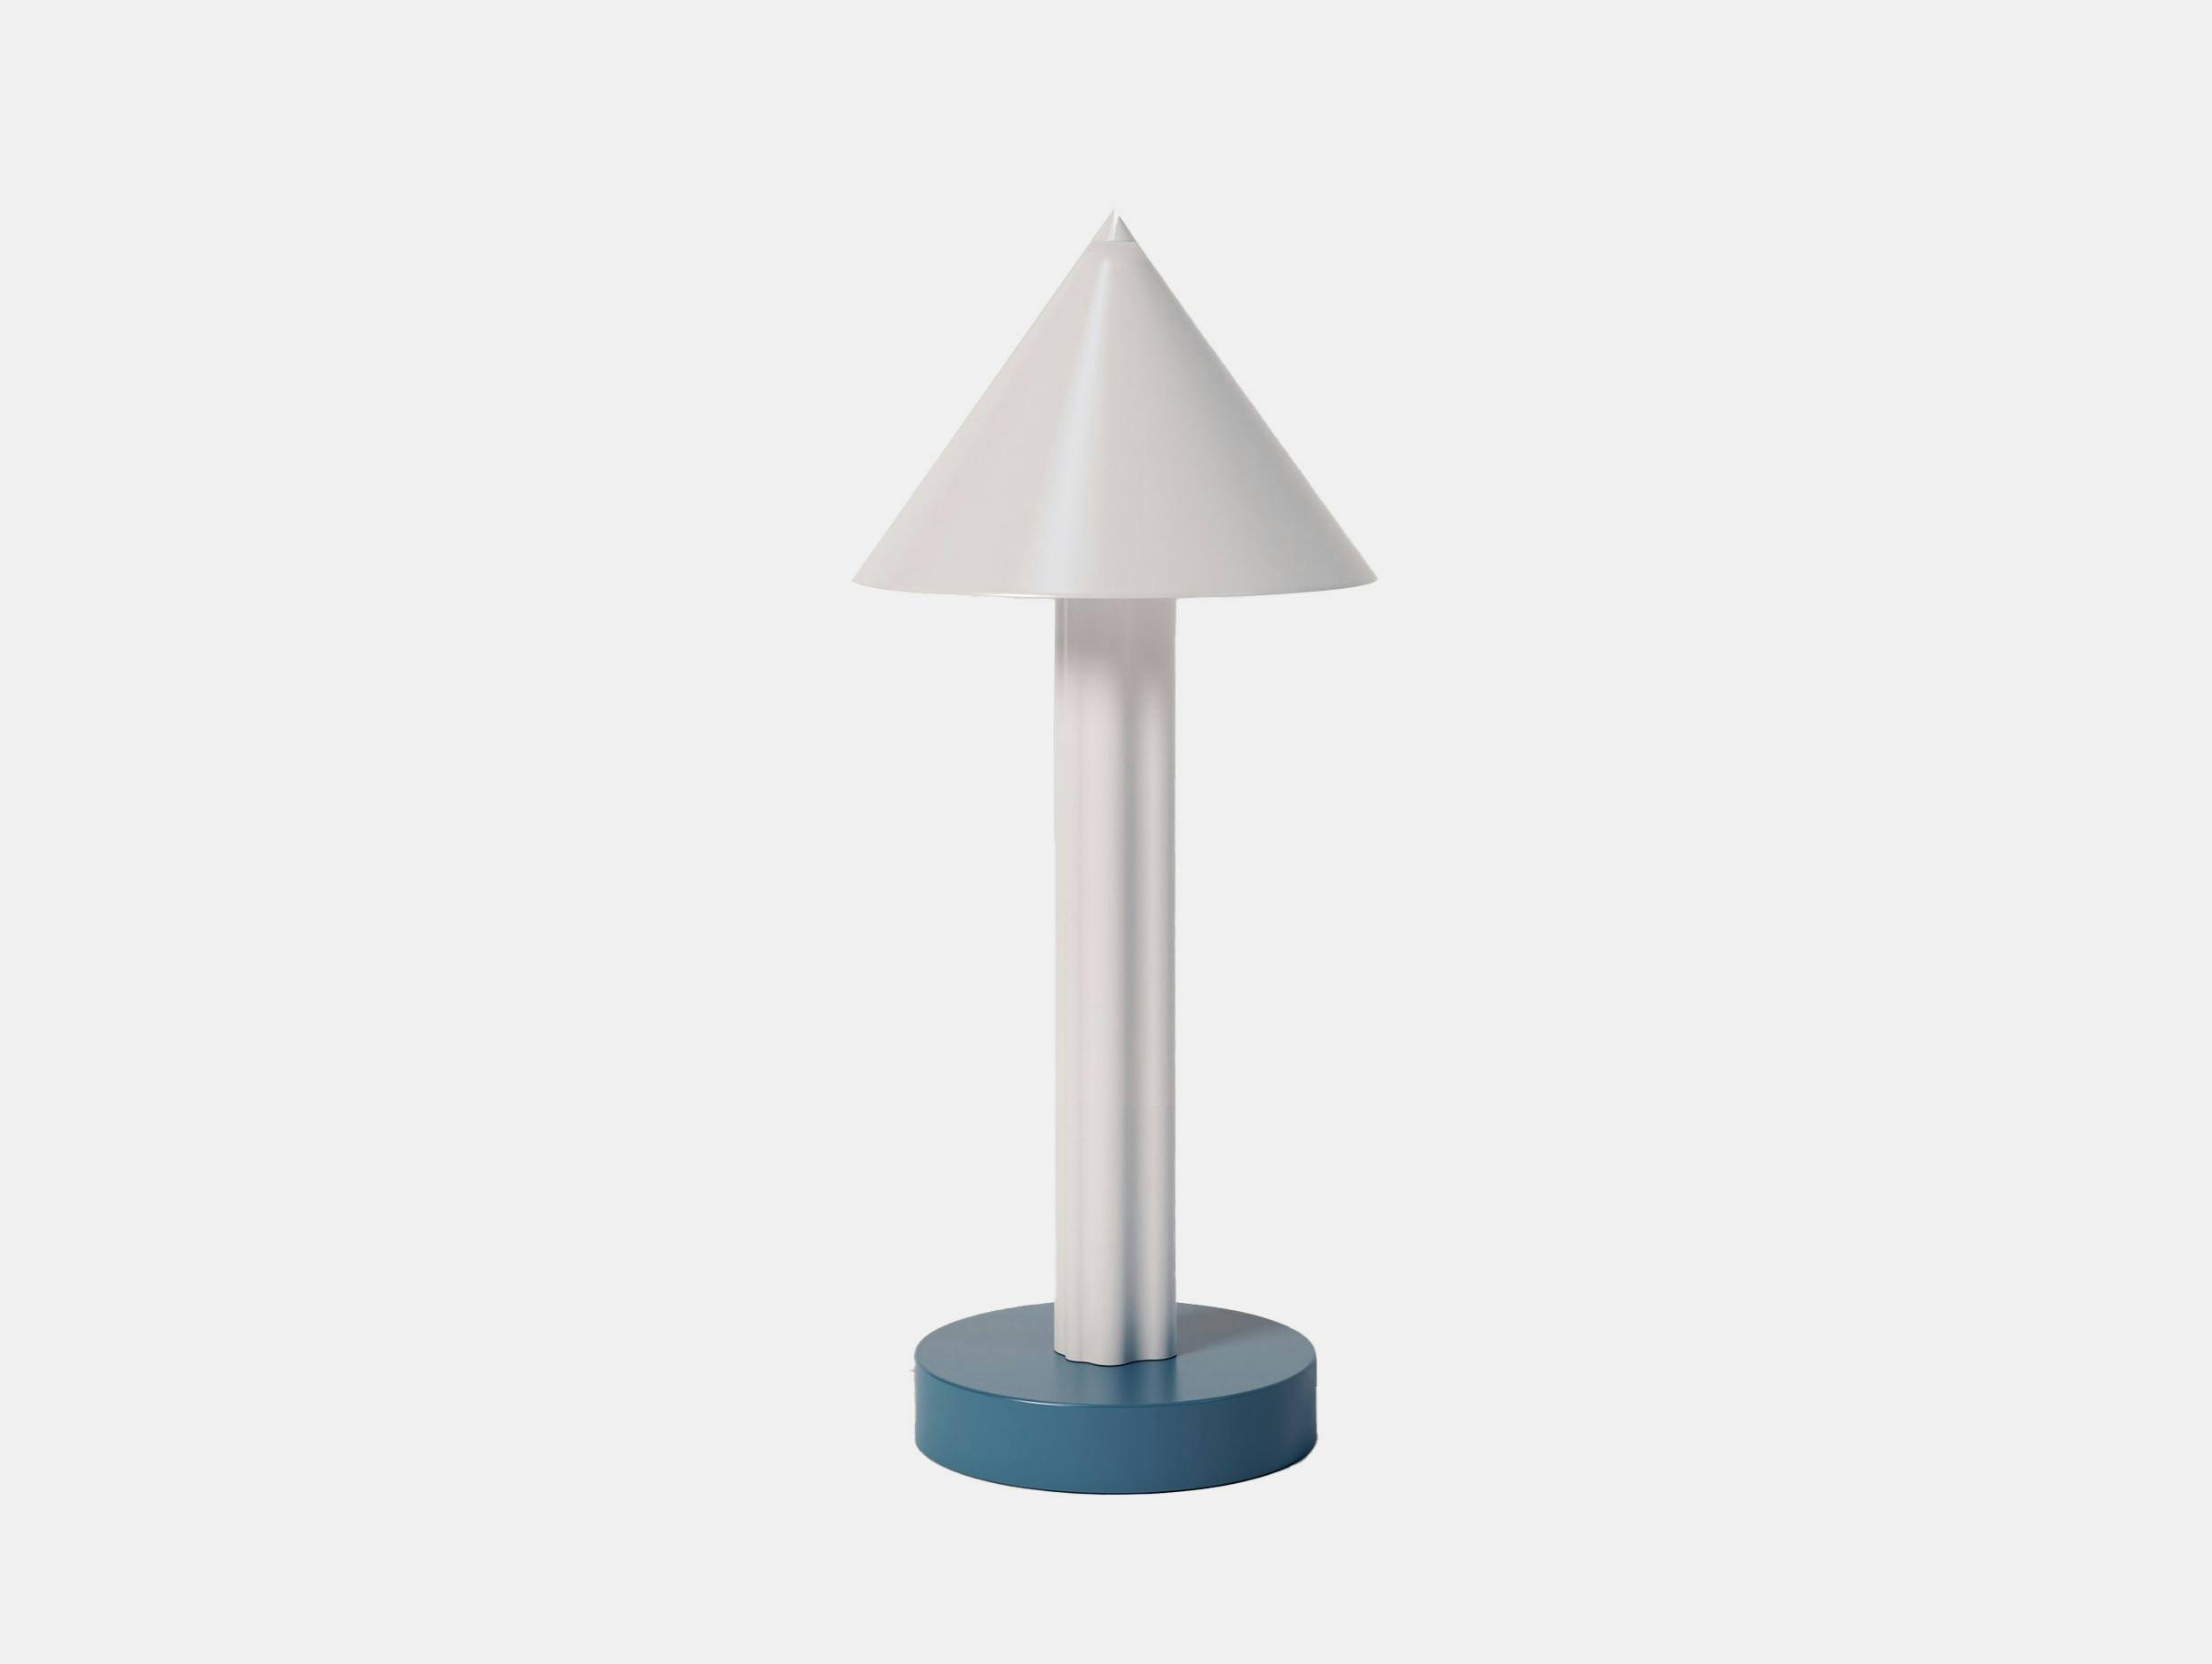 Atelier areti elements profiles cone desk white blue